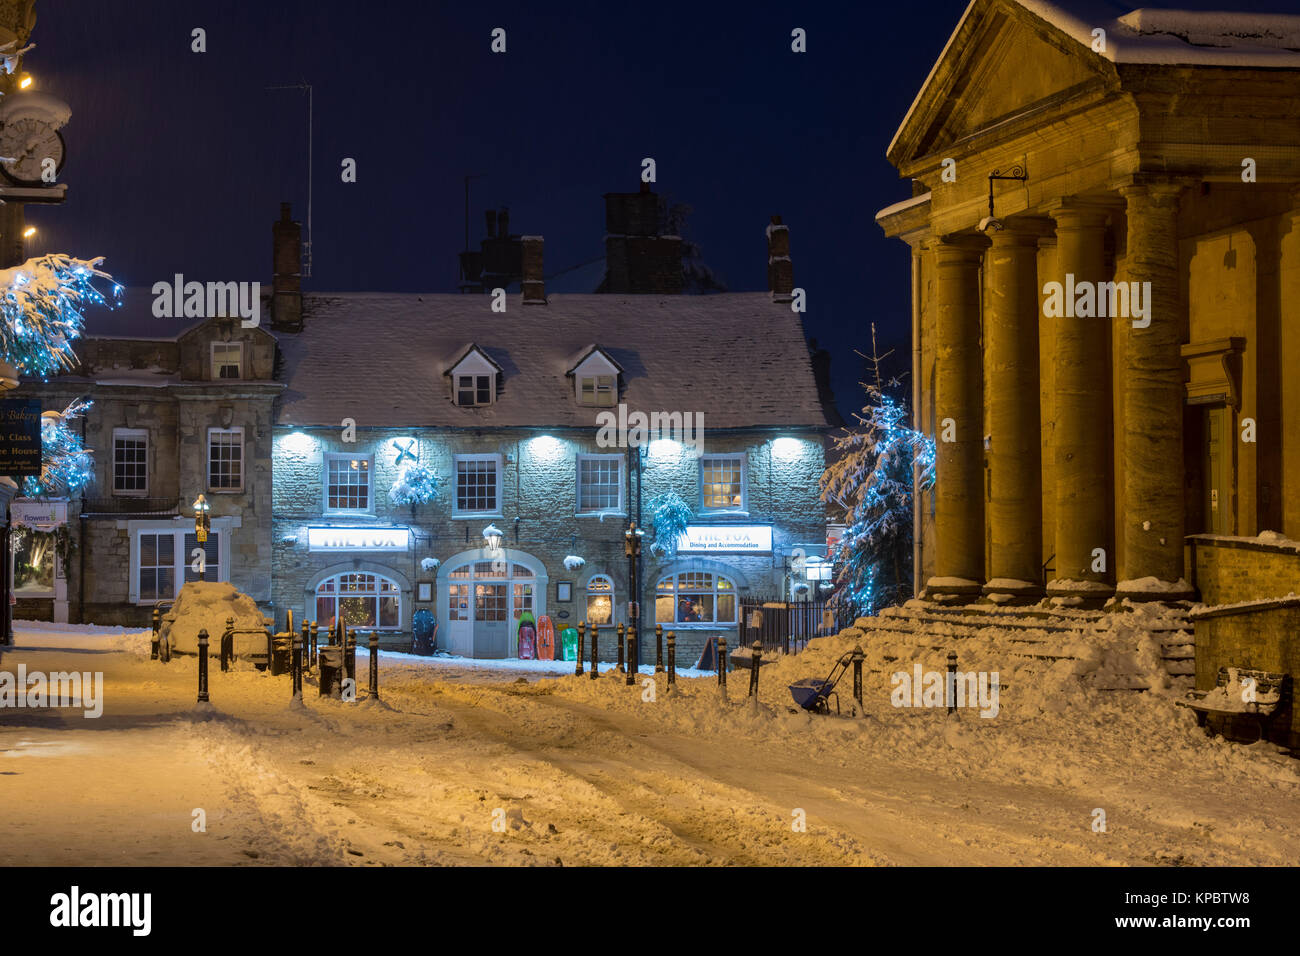 The Fox Inn sur le marché de nuit dans la neige. , Cotswolds Chipping Norton, Oxfordshire, Angleterre Banque D'Images